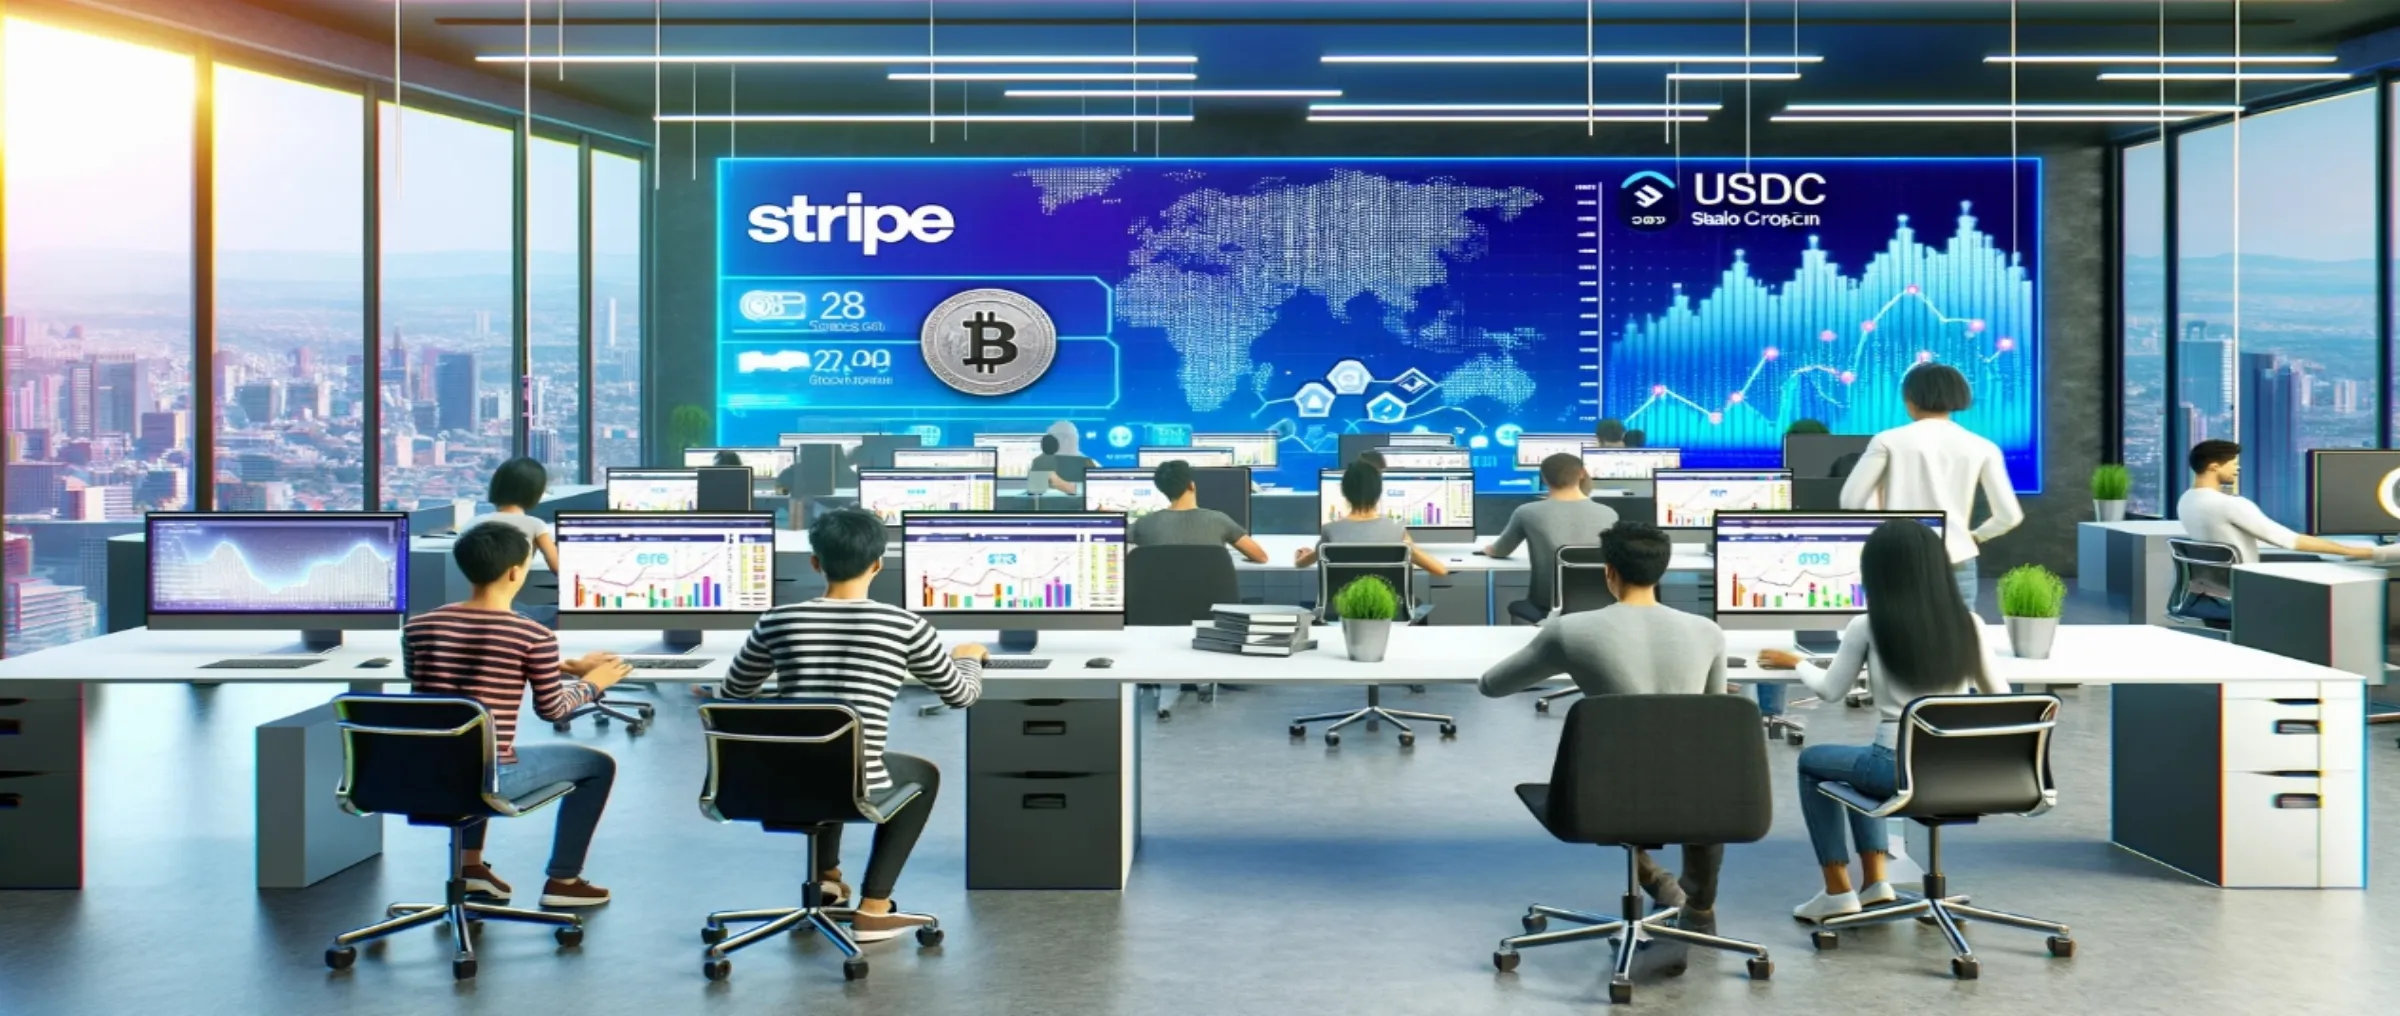 Stripe возобновляет криптоплатежи с использованием стейблкоина USDC